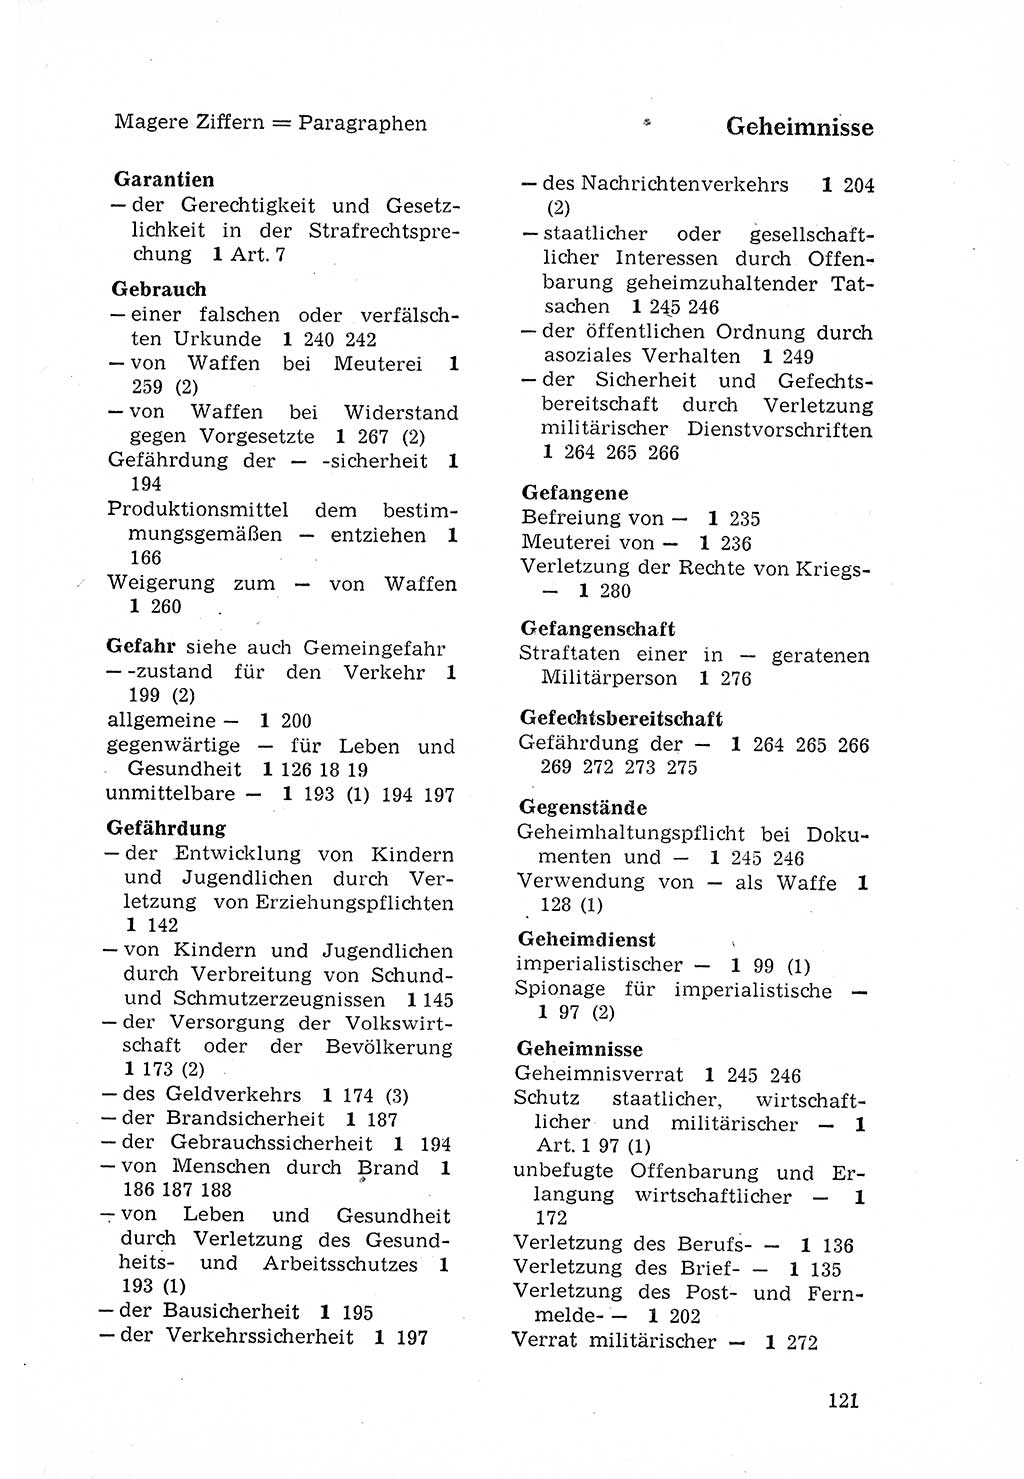 Strafgesetzbuch (StGB) der Deutschen Demokratischen Republik (DDR) 1968, Seite 121 (StGB DDR 1968, S. 121)